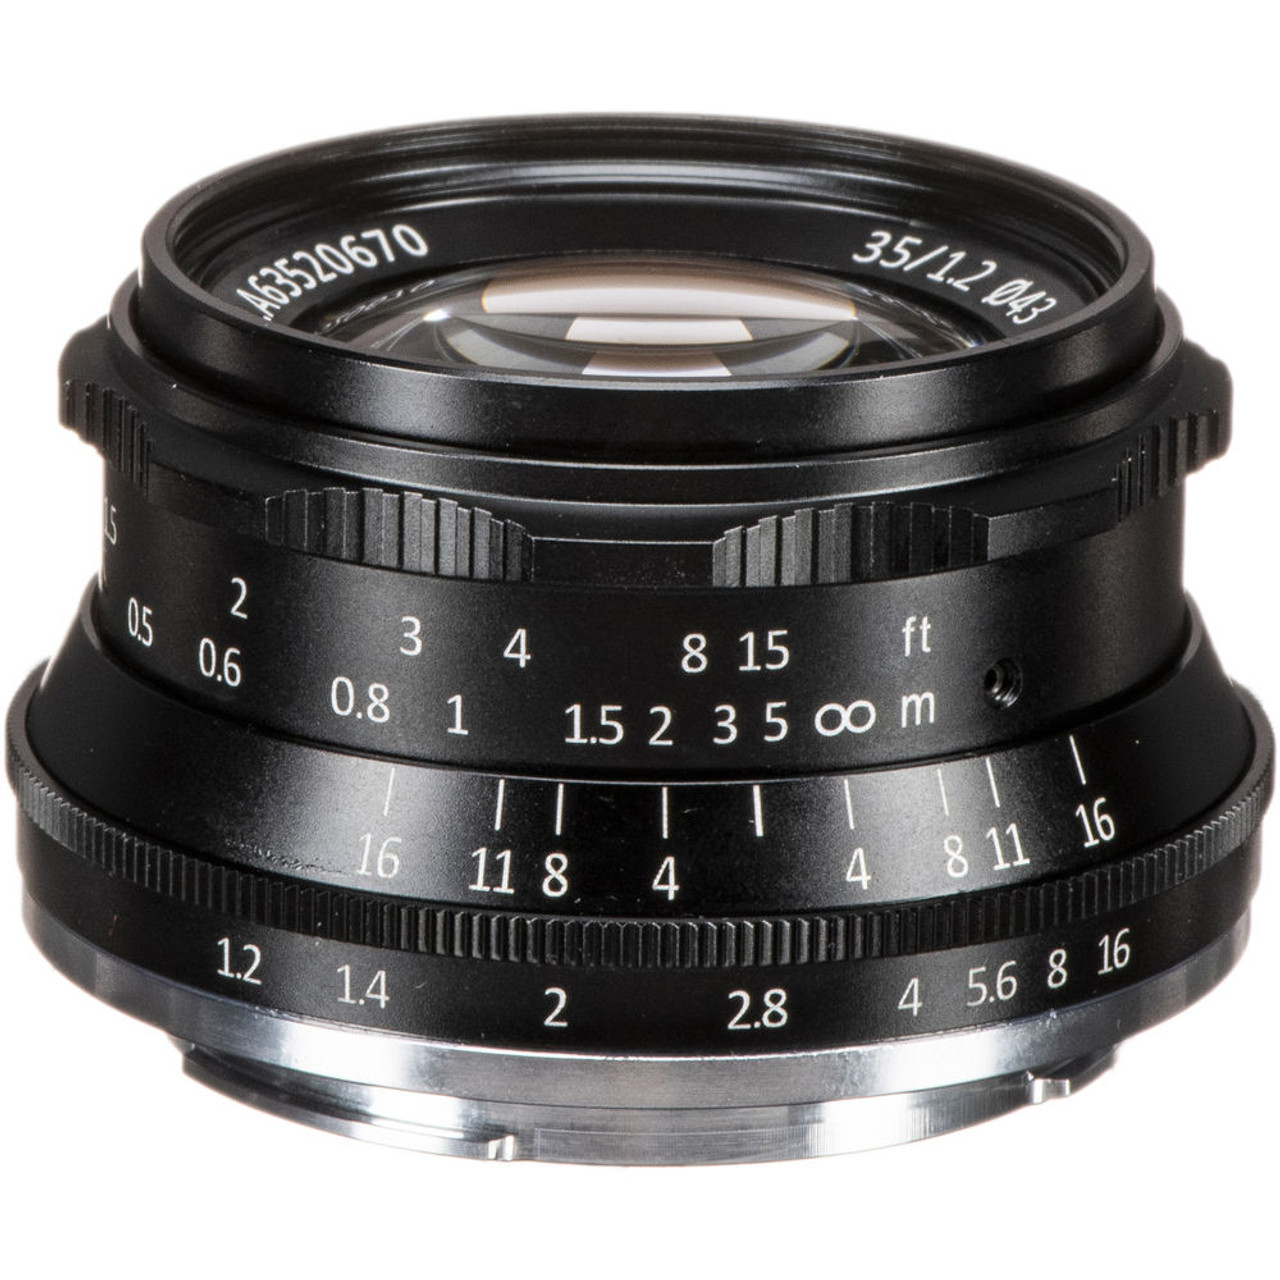 七工匠7artisans 35mm f/1.2 Fuji X Mount 鏡頭